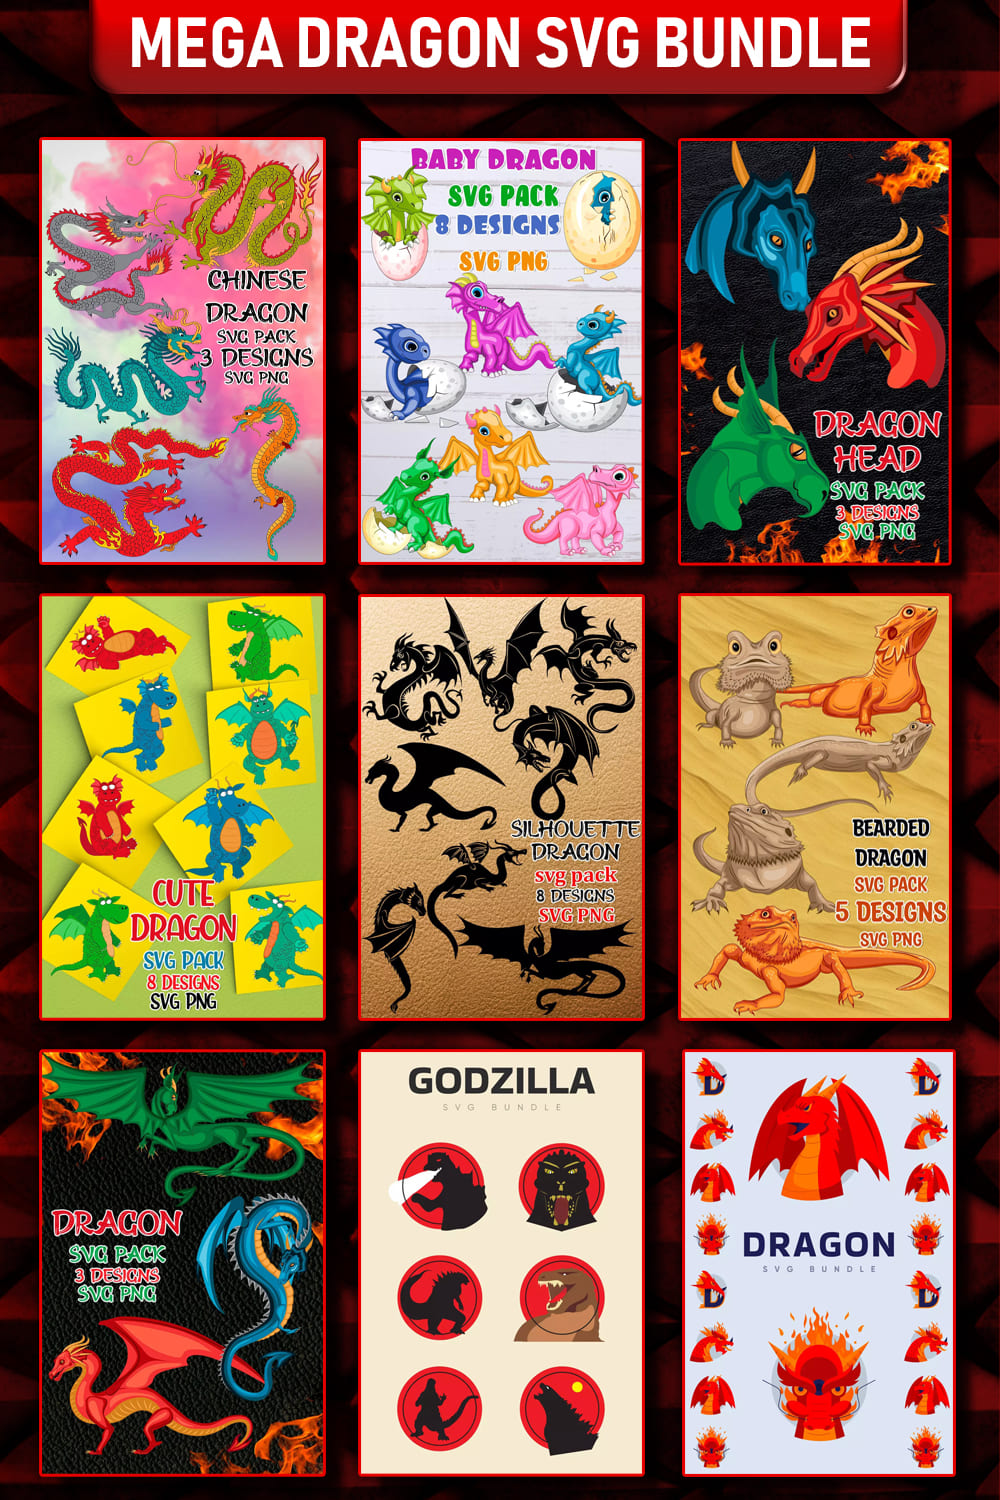 Mega Dragon SVG Design Bundle Pinterest image.